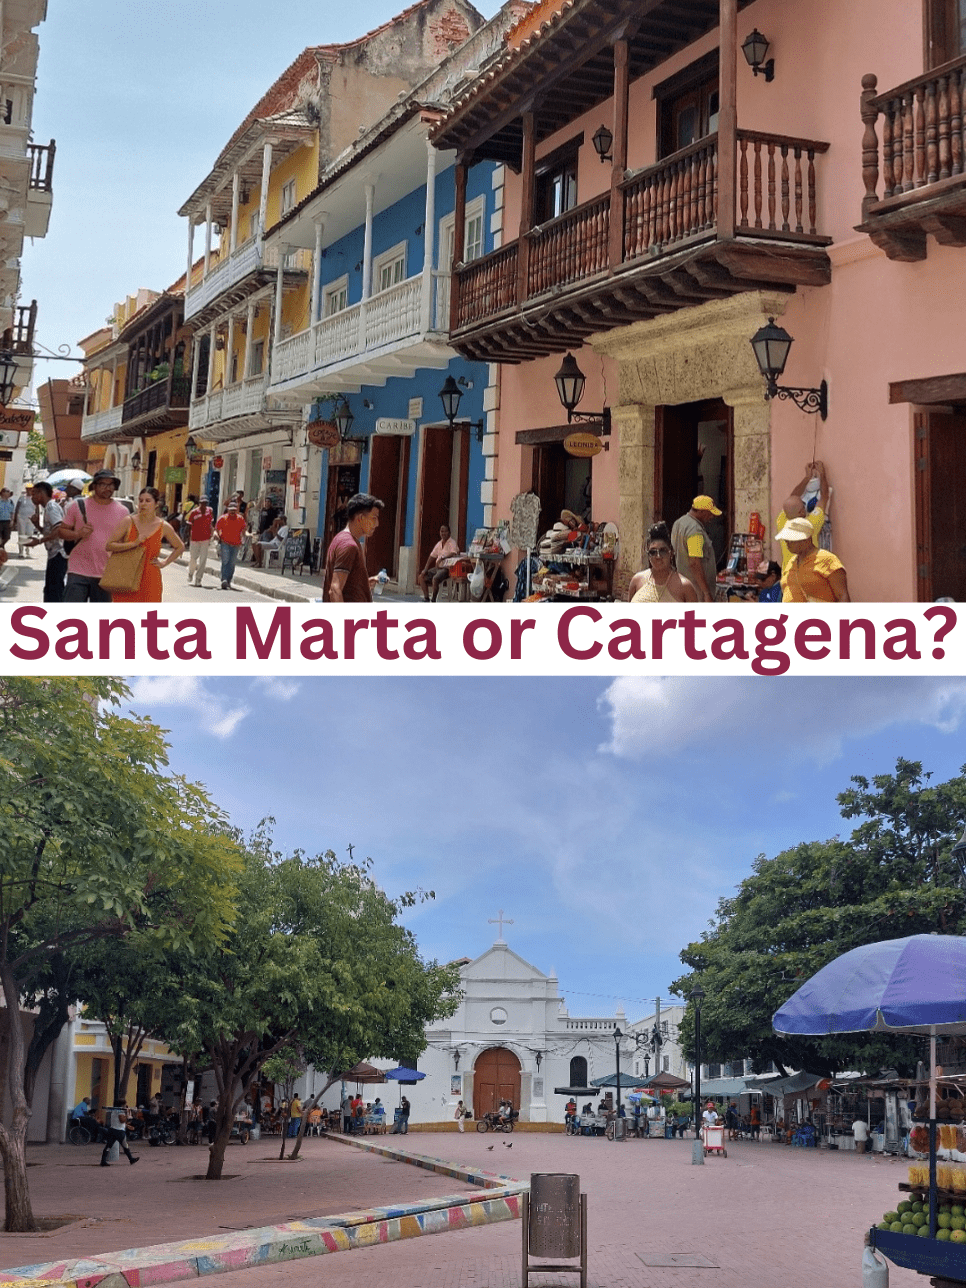 Cartagena or Santa Marta?